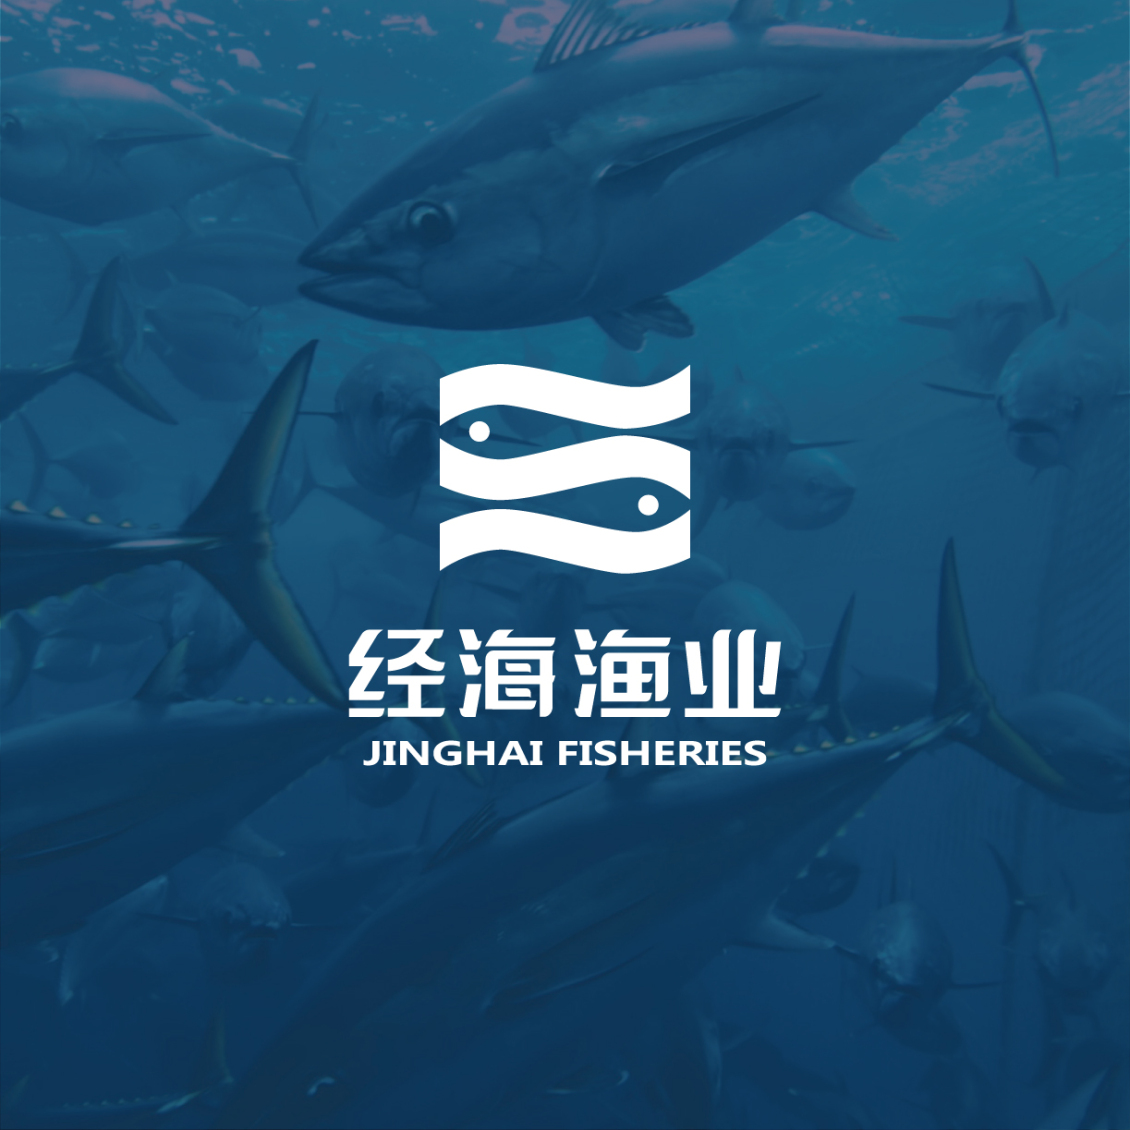 淘宝美工y255401经海渔业logo设计作品